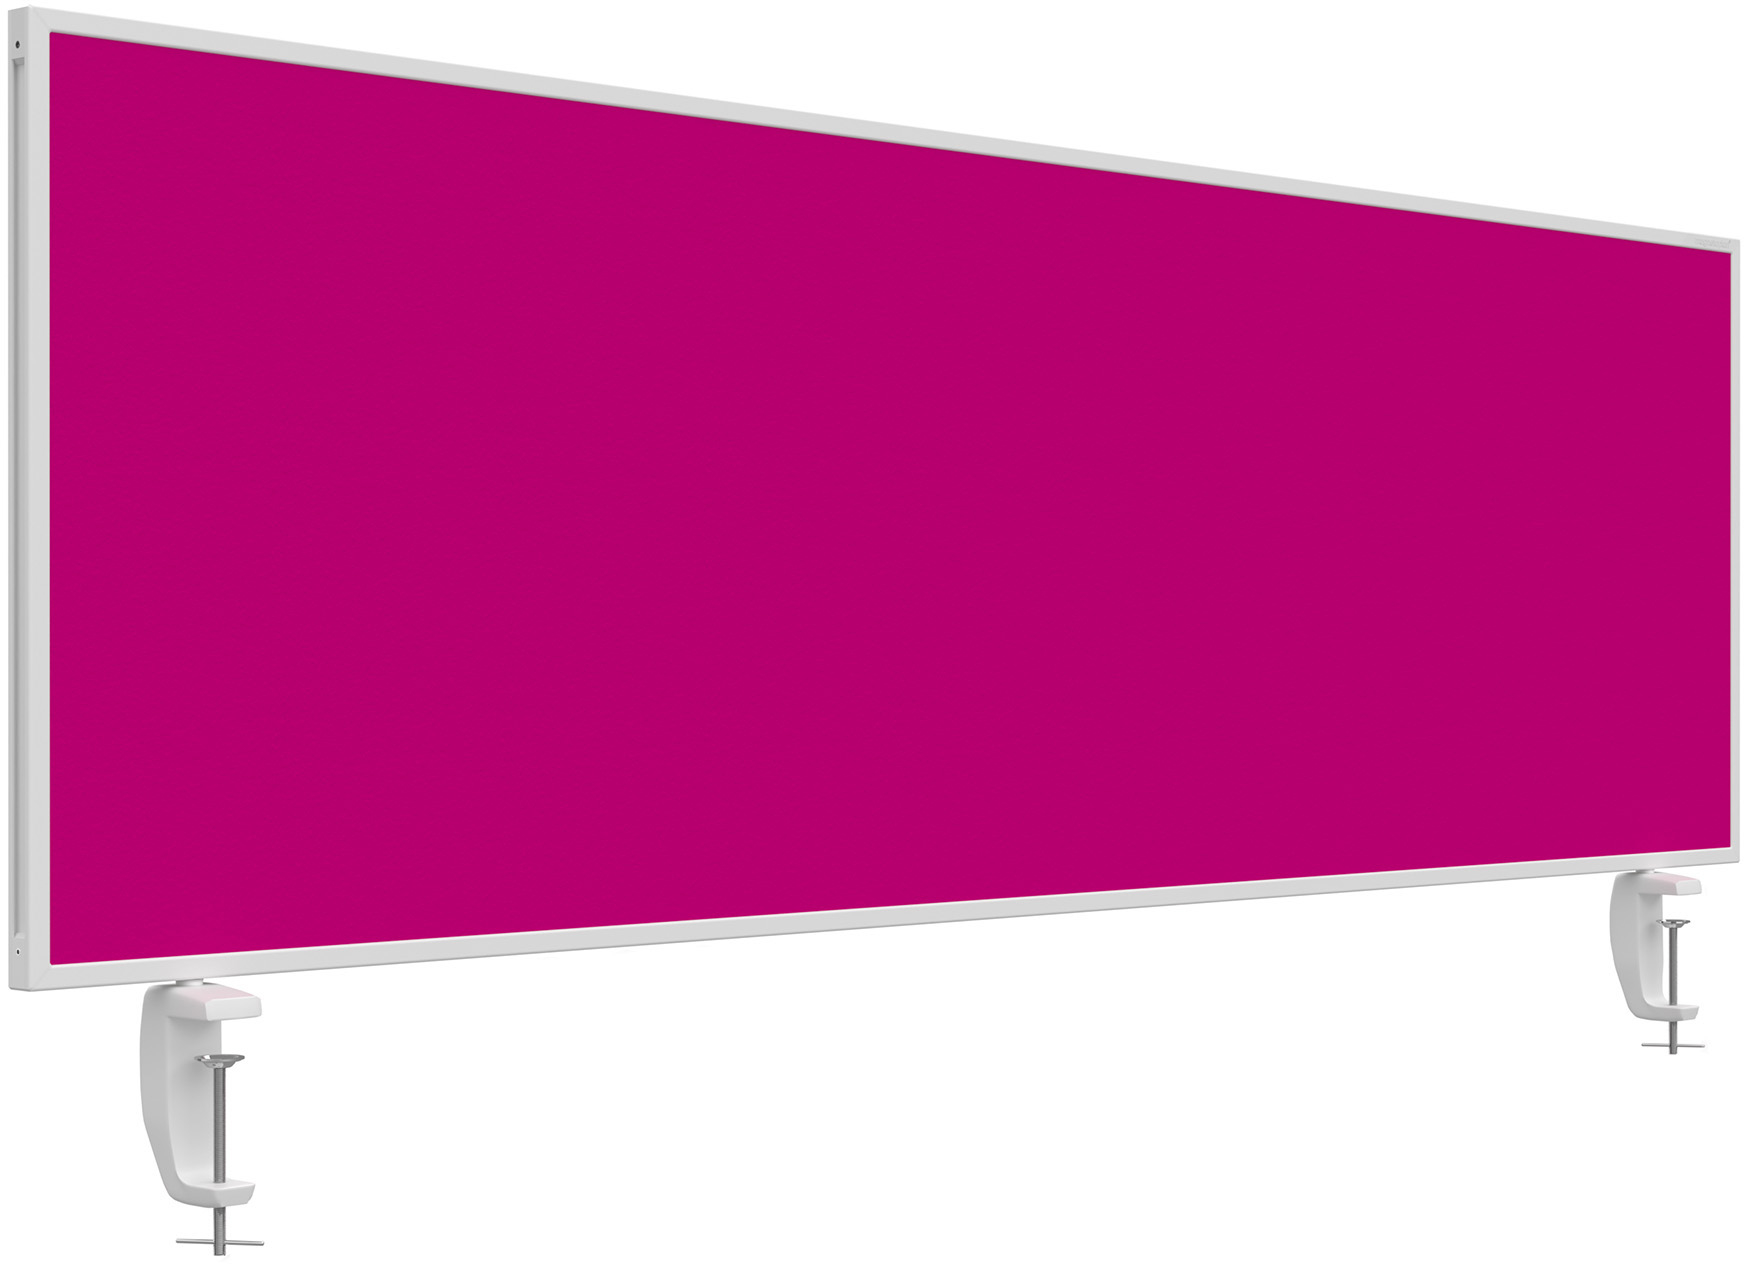 MAGNETOPLAN Tischtrennwand VarioPin 1116018 pink 1600x500mm